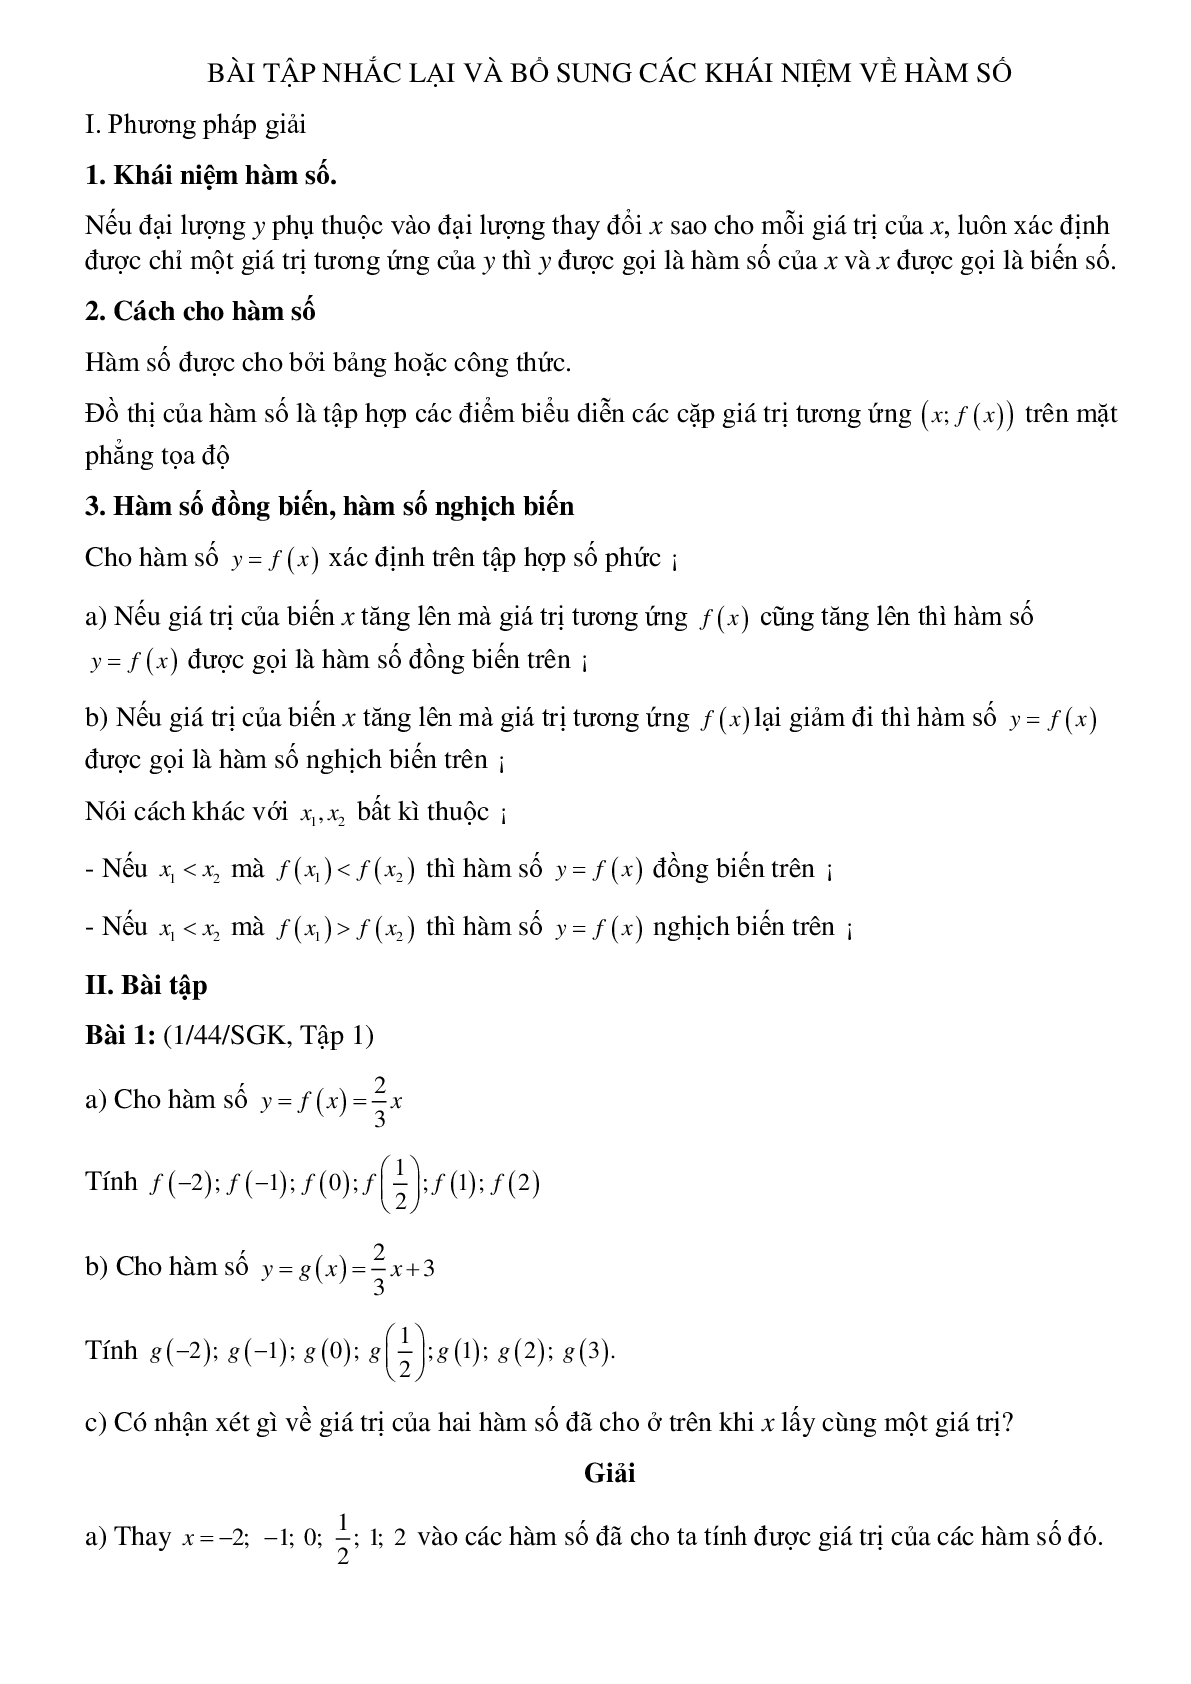 50 Bài tập Nhắc lại và bổ sung các khái niệm về hàm số (có đáp án)- Toán 9 (trang 1)